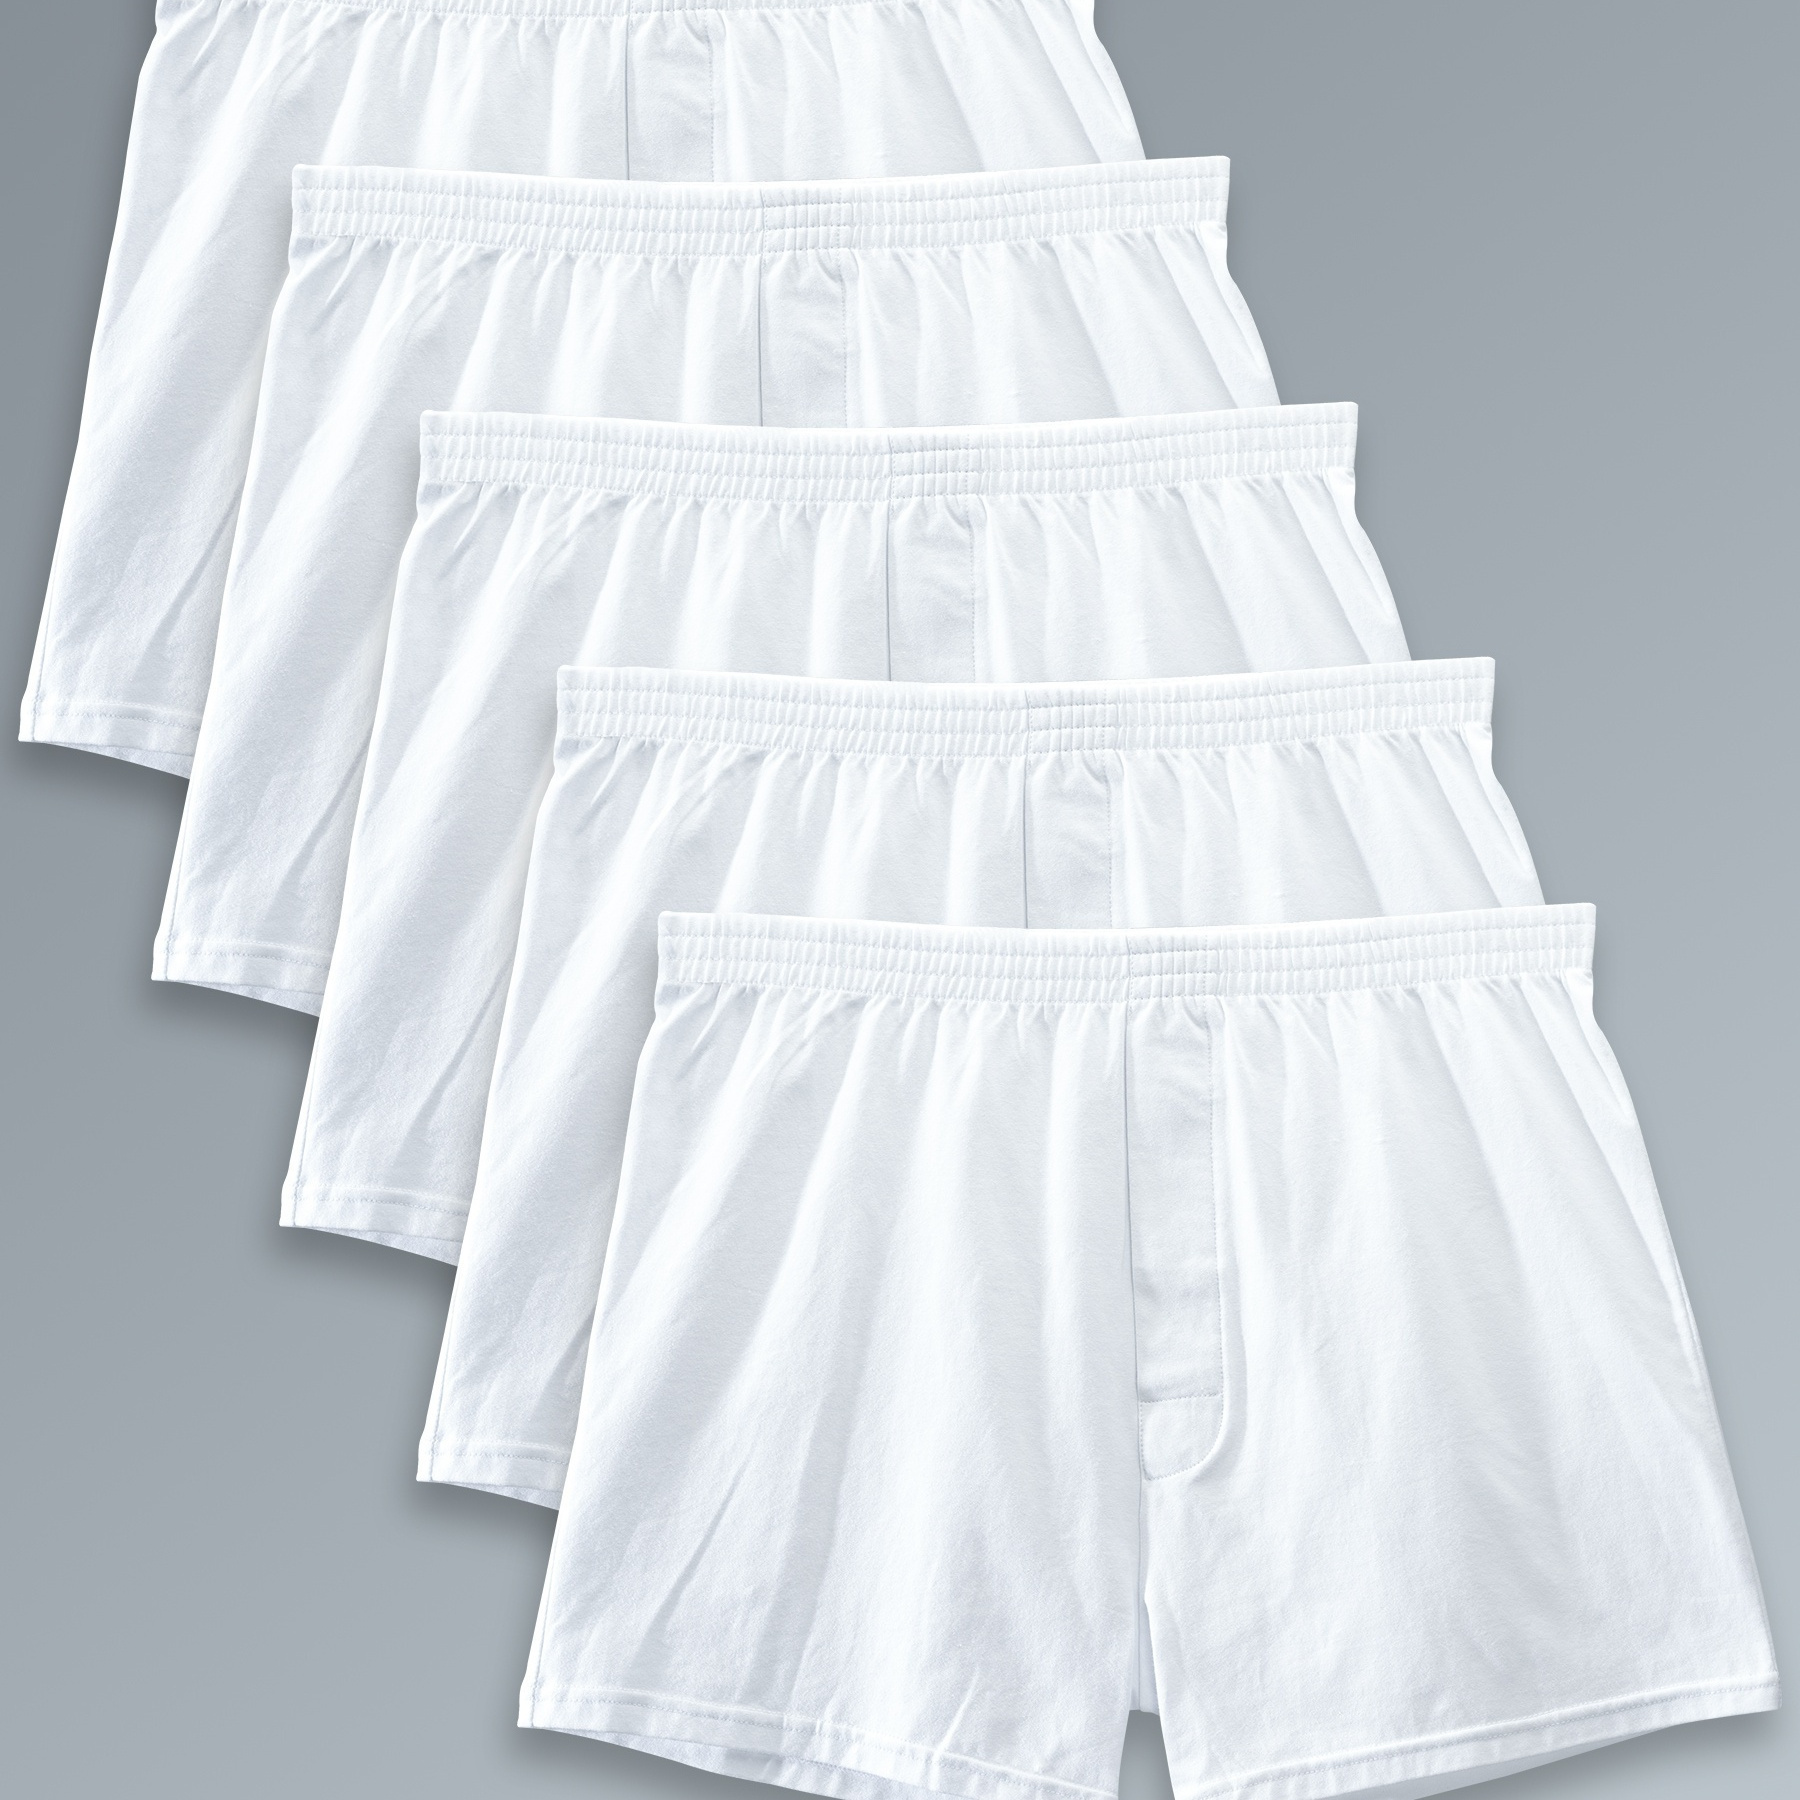 

5pcs Men's Classic White Cotton Boxer Brief Shorts, Breathable Comfy Stretchy Boxer Trunks, Men's Underwear